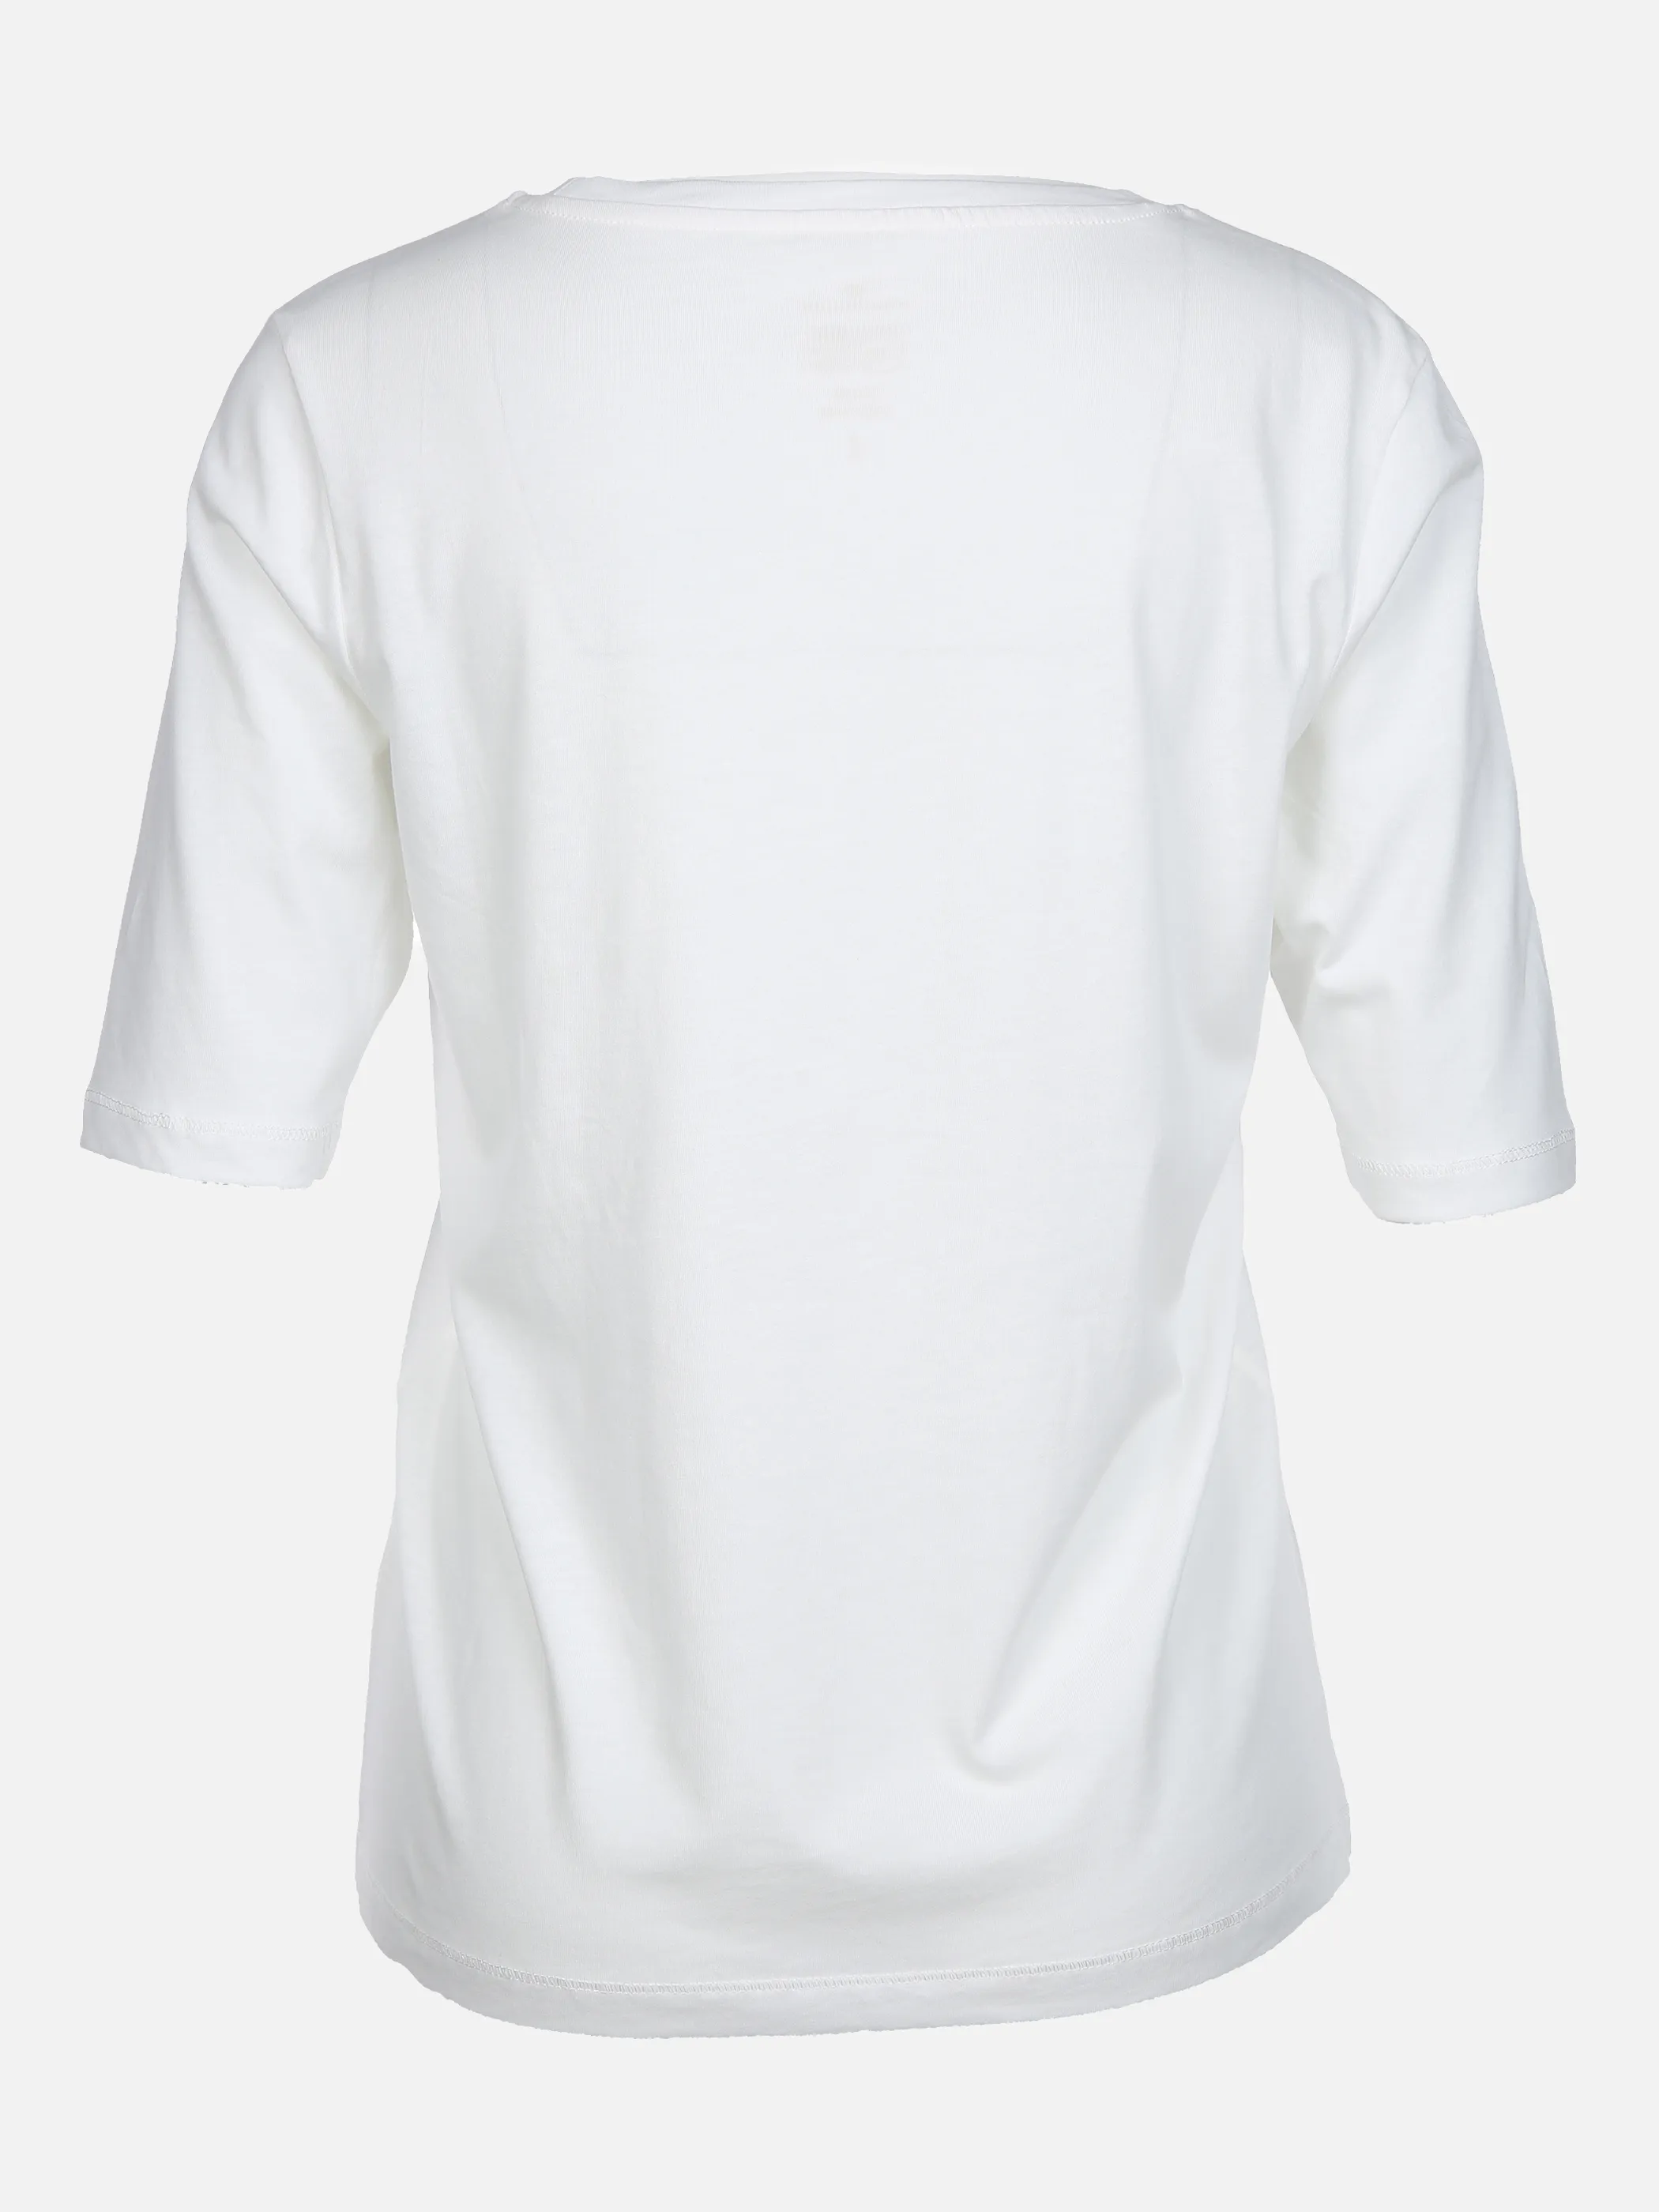 Tom Tailor 1027150 T-shirt frontprint Weiß 856705 10315 2